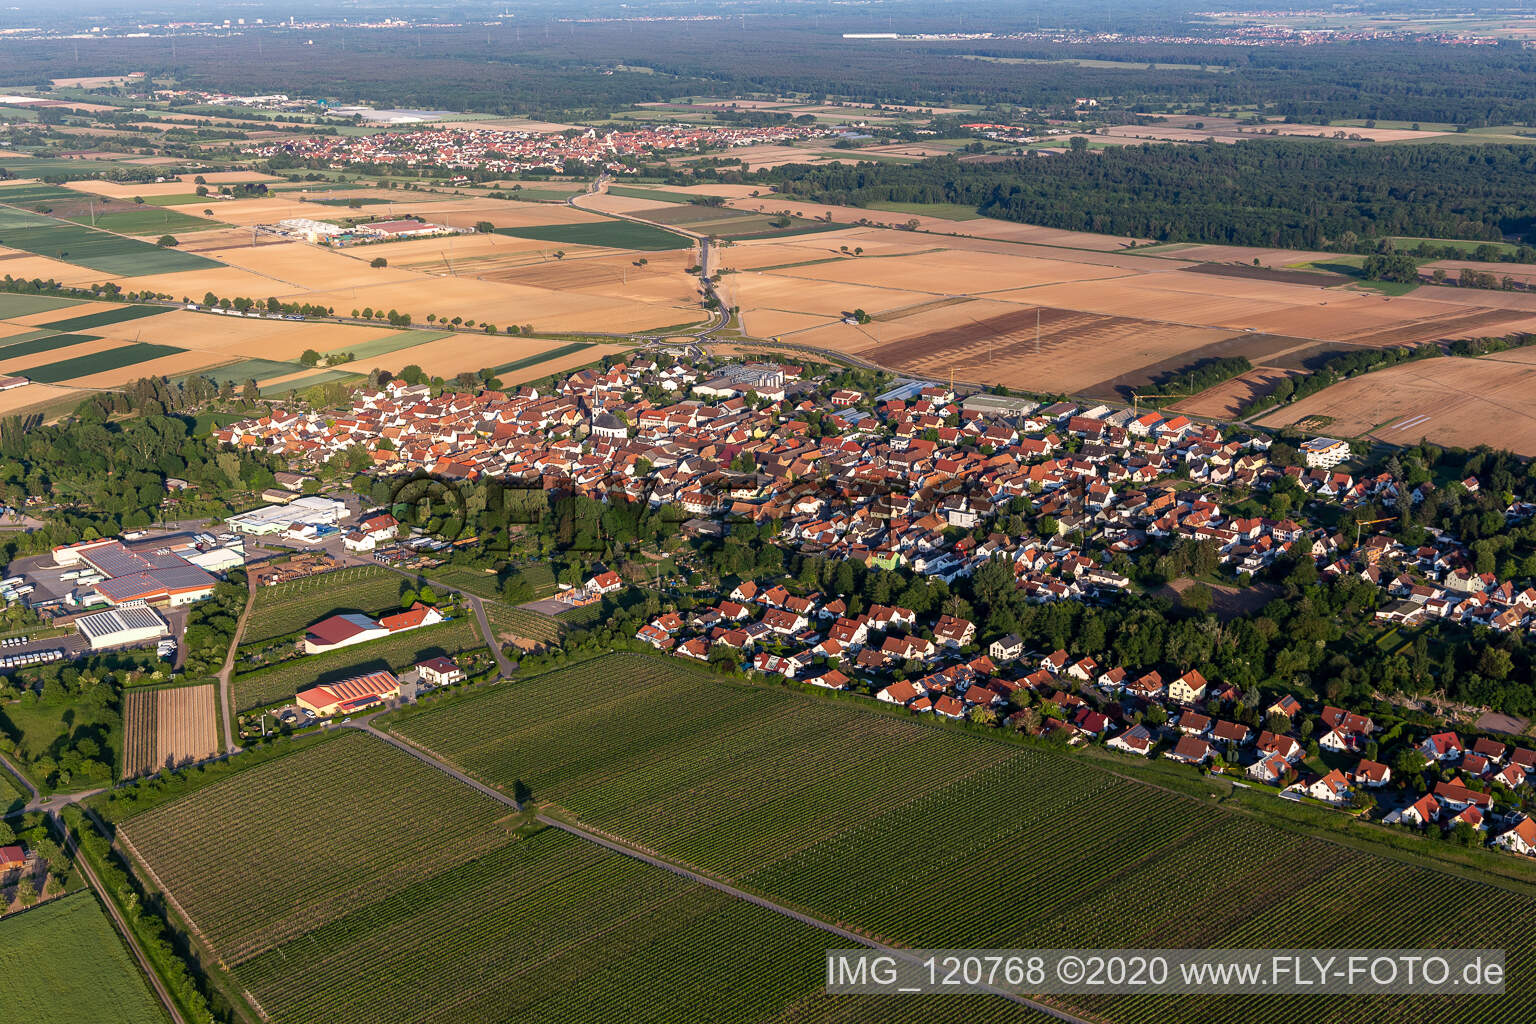 Vue aérienne de Vue de la ville en bordure des champs et zones agricoles de Niederhochstadt à Hochstadt dans le département Rhénanie-Palatinat, Allemagne